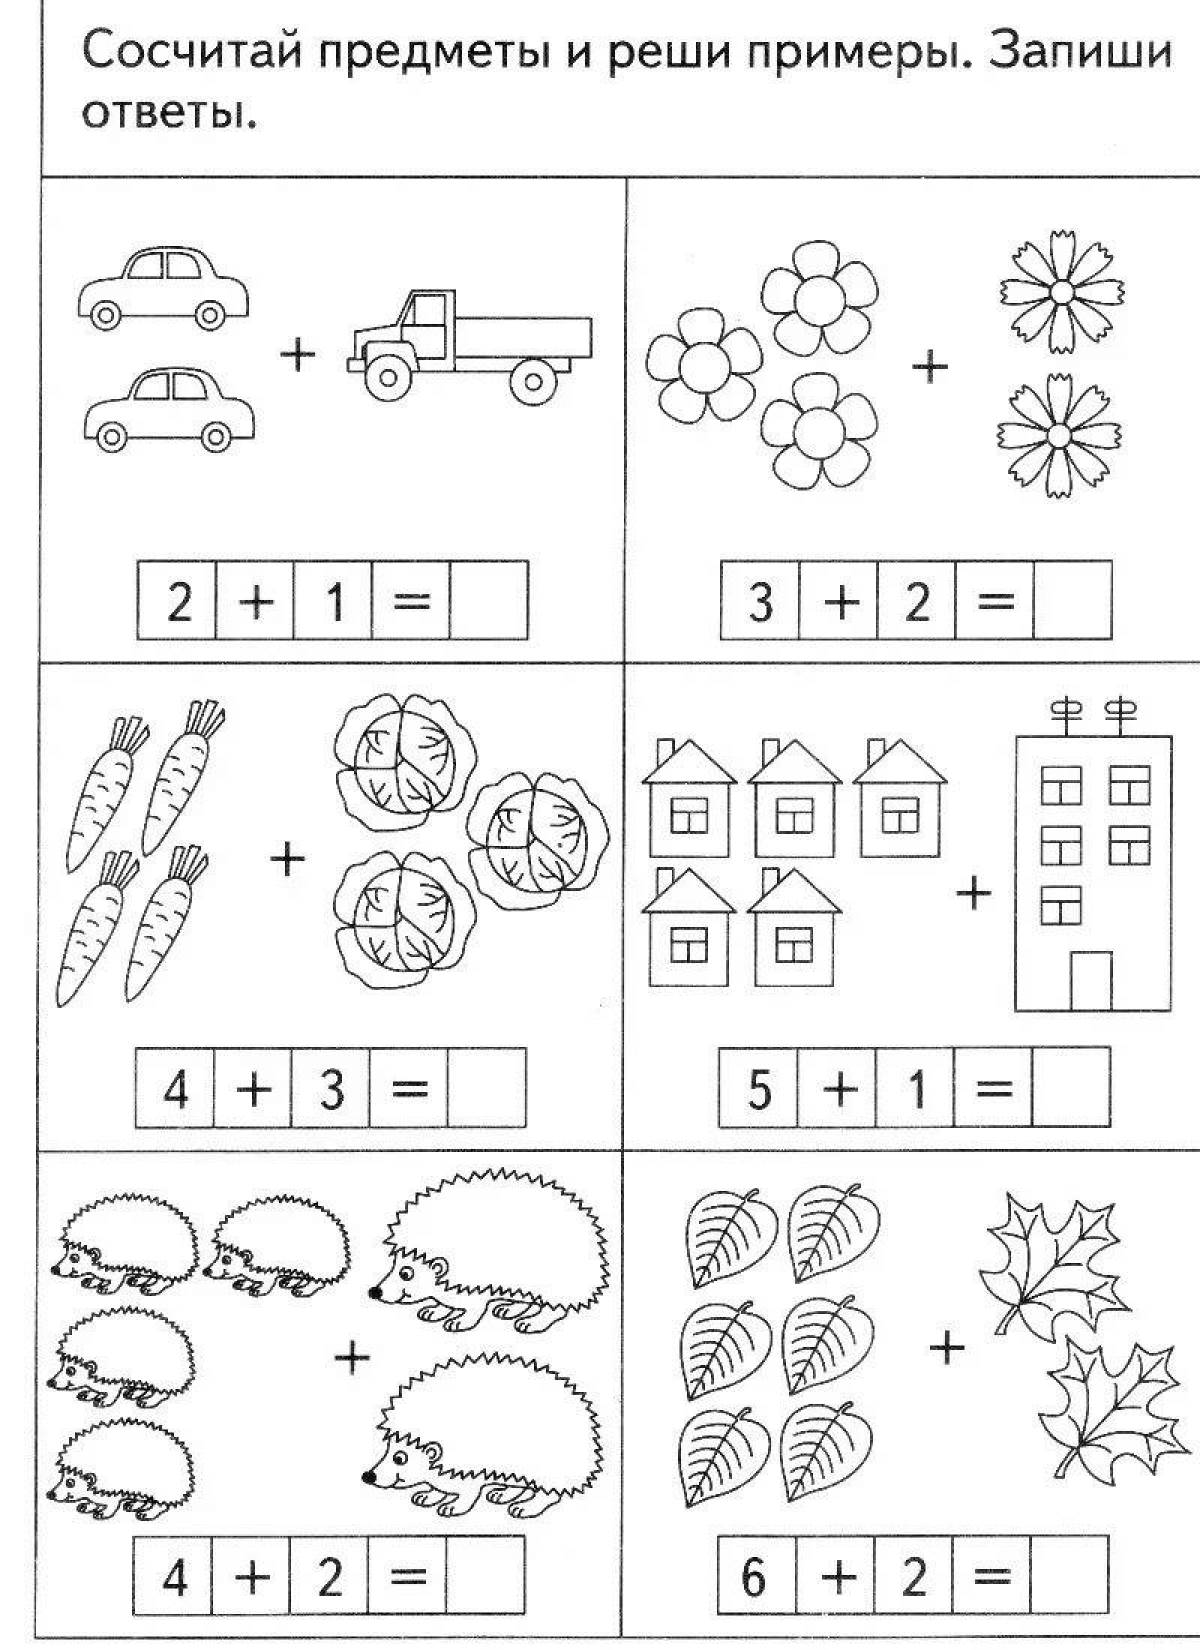 Сосчитай и запиши. Задания по математике для дошкольников решение задач. Задания по математике решение примеров для дошкольников. Задачи для дошкольников для дошкольников задания. Задания по математике для дошкольников примеры.